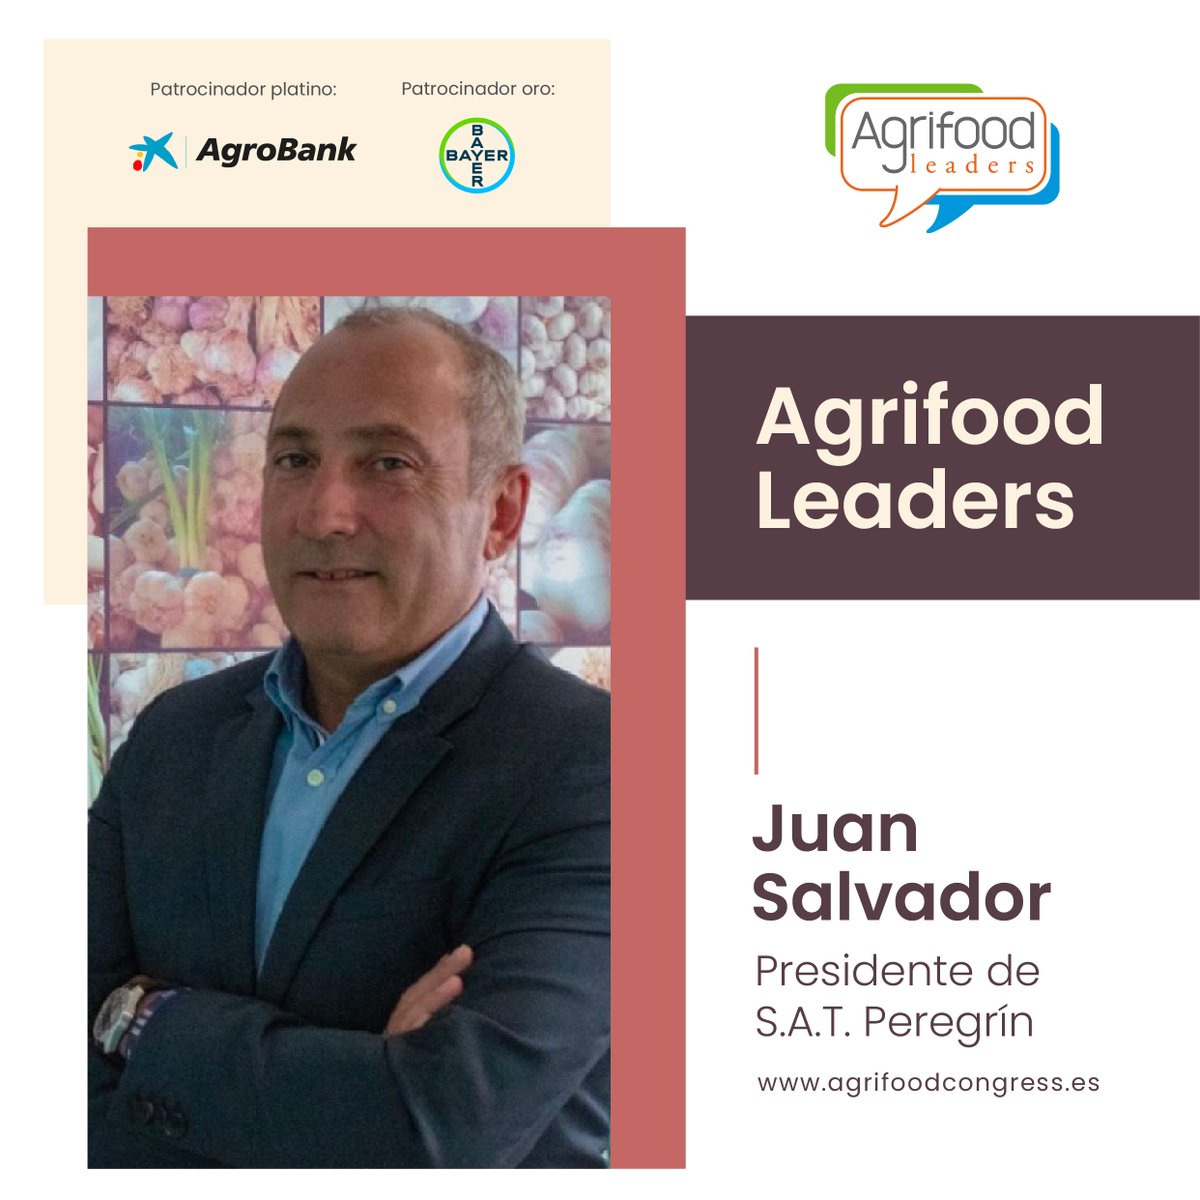 ¿Conoces a los #AgrifoodLeaders? Juan Salvador Peregrín, Presidente de @AsociacionANPCA ya forma parte de la inciativa 🫒👩 
 
agrifoodcongress.es/key/leaders/ju…